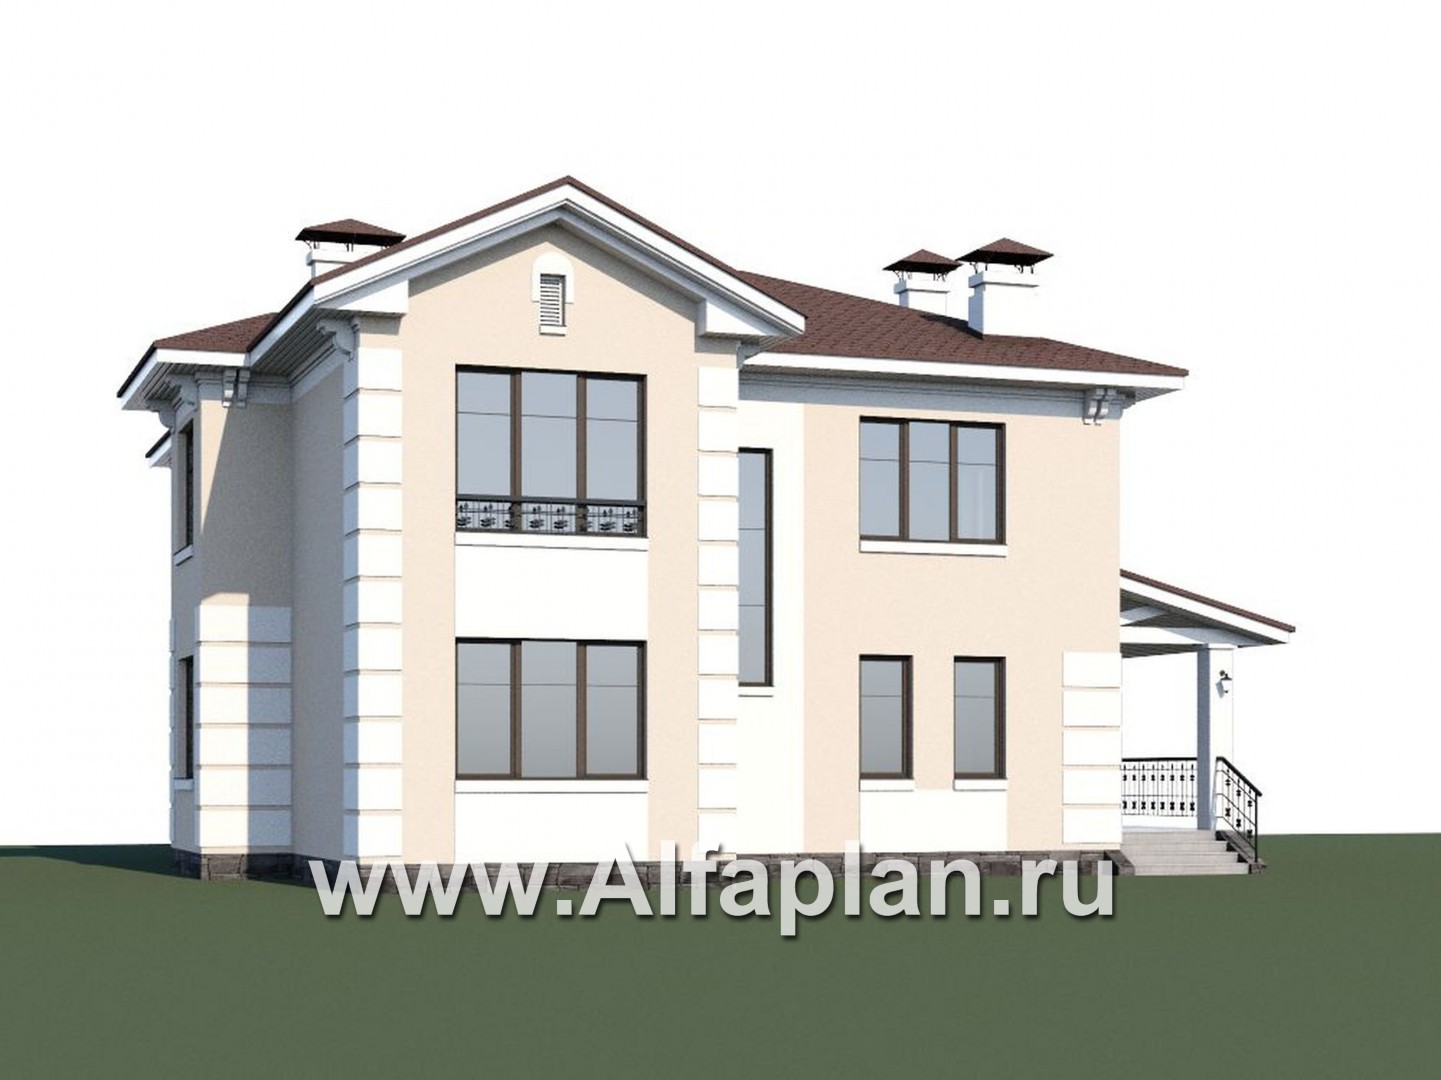 Проекты домов Альфаплан - «Галатея» - двухэтажный коттедж в традиционном стиле - дополнительное изображение №1